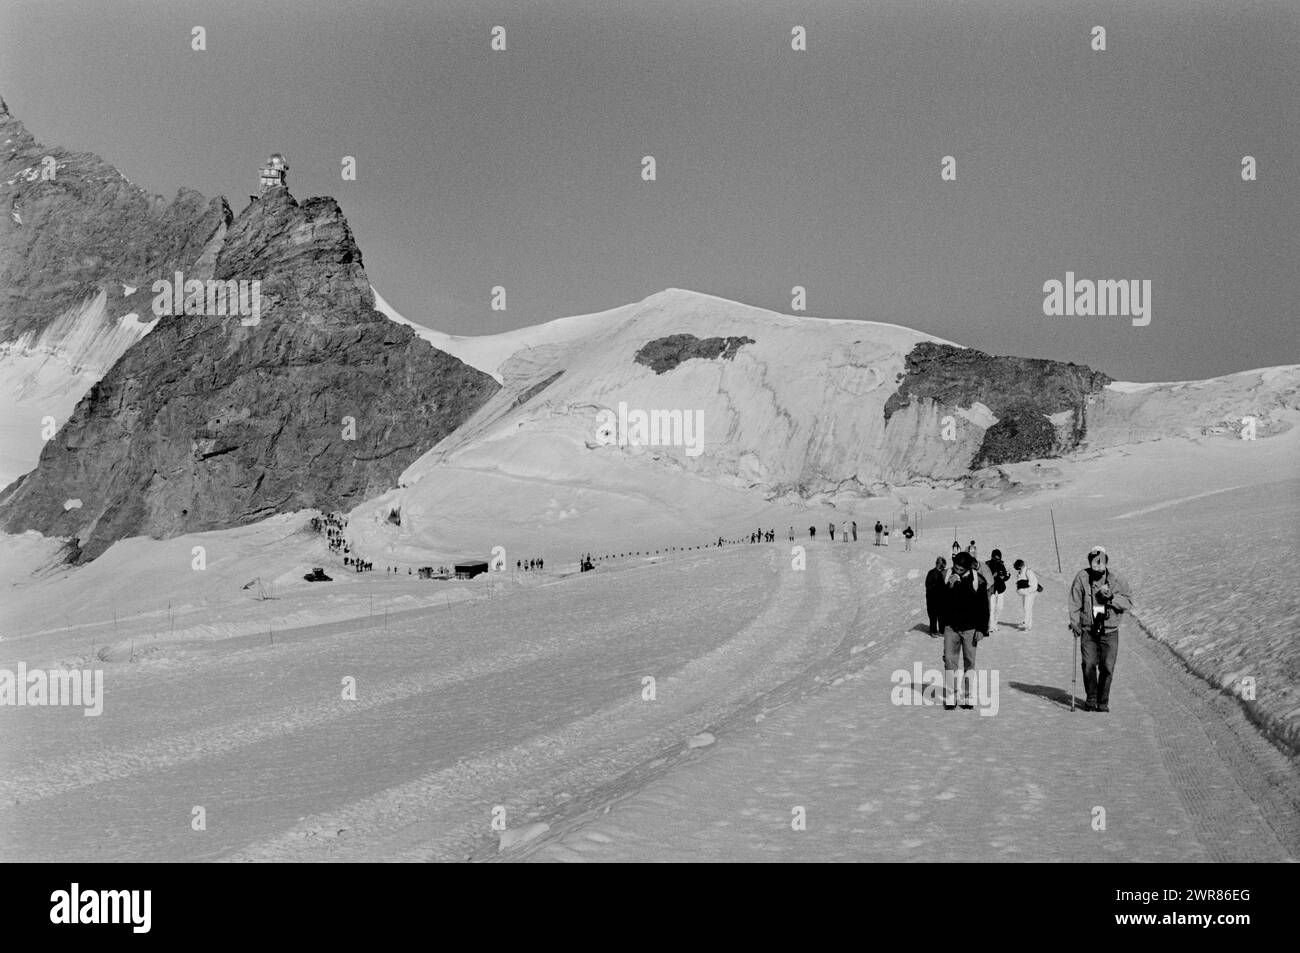 La vetta svizzera dello Jungfraujoch mostra gli escursionisti che si godono il ghiacciaio Aletsch nei mesi estivi 1991 turisti che camminano fino al rifugio Monchsjoch sopra il ghiacciaio Aletsch. Nella zona conosciuta come il Top of Europe. Questa scansione è stata eseguita nel 2024 Foto Stock